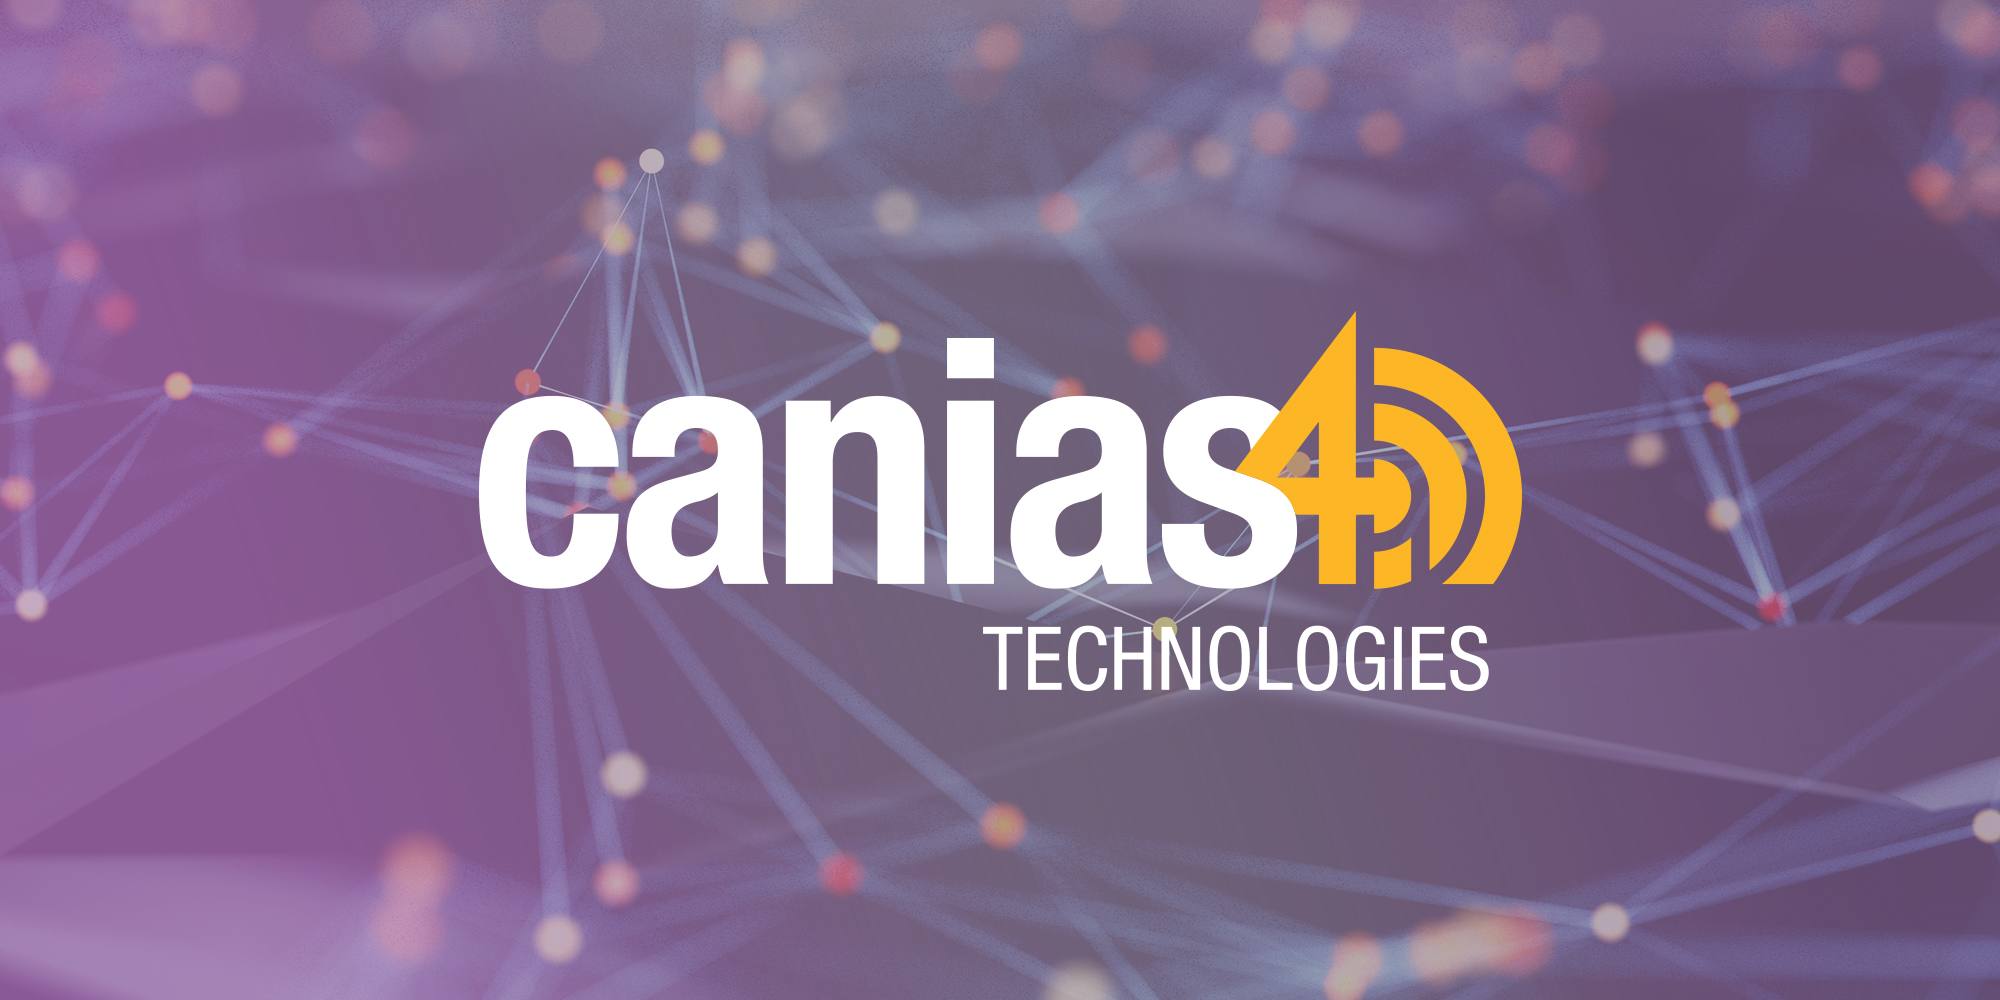 canias4.0 teknolojisiyle tanışın